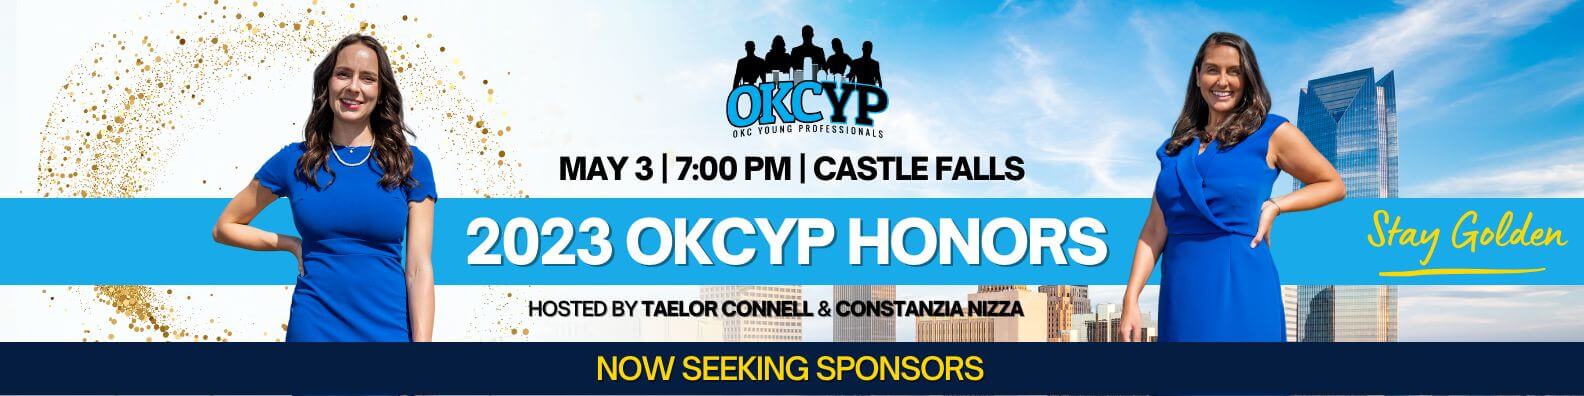 OKCYP Event Ads